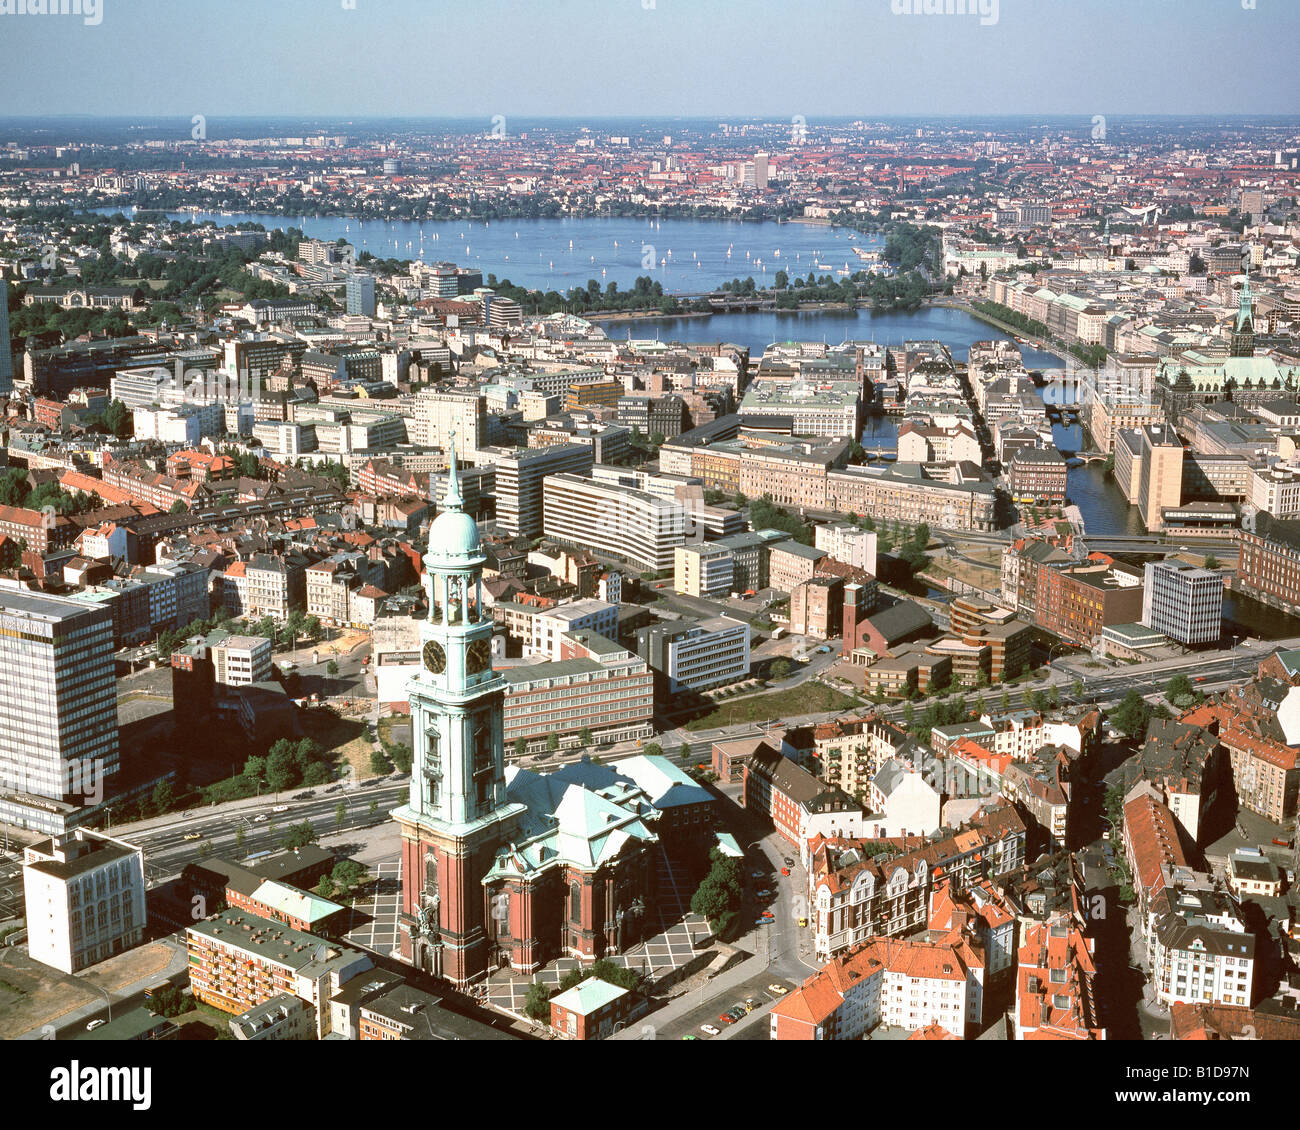 DE - Hamburgo: el centro de la ciudad y el río Alster desde el aire Foto de stock